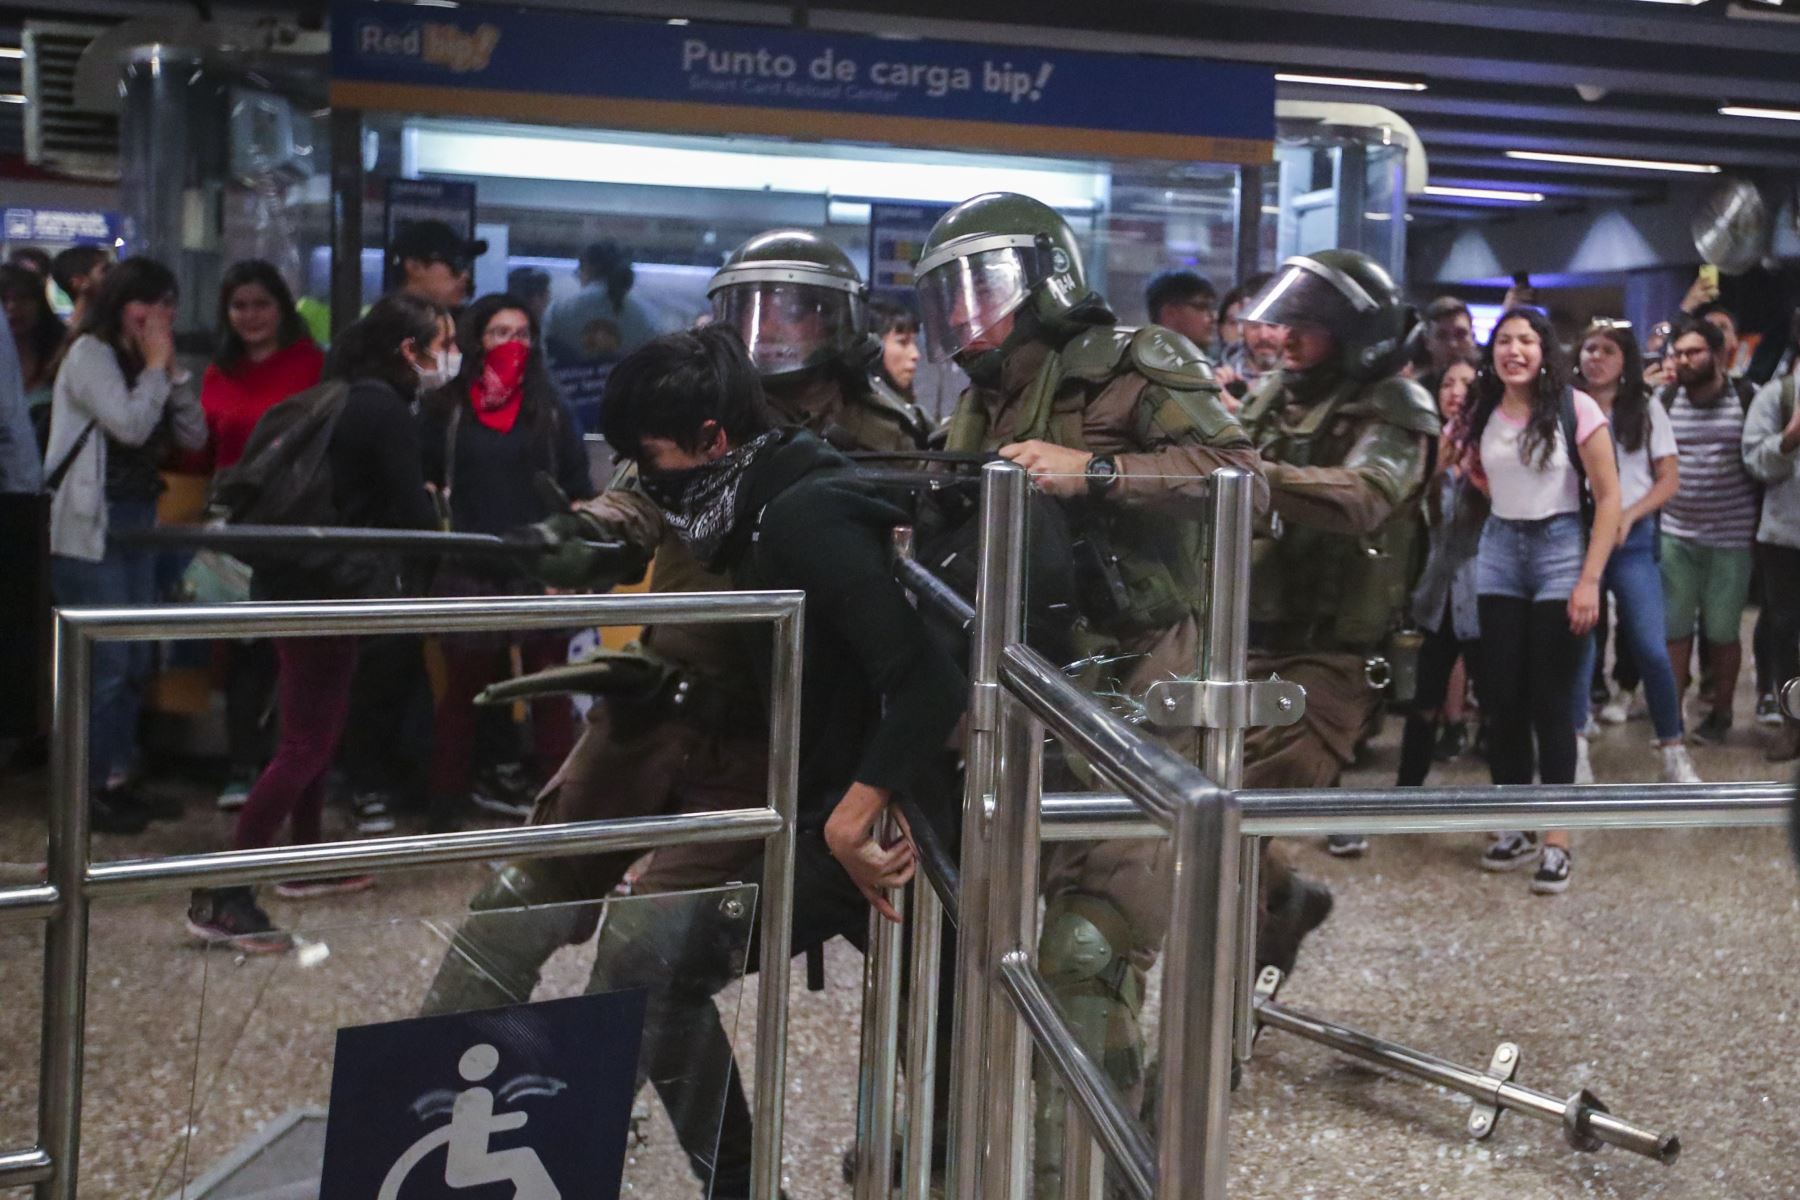 Estudiantes escolares y universitarios se unieron a una protesta masiva de evasión de tarifas en el metro de Santiago después de la tarifa más alta aumento en los últimos años, paralizando dos de sus líneas principales. Foto: EFE